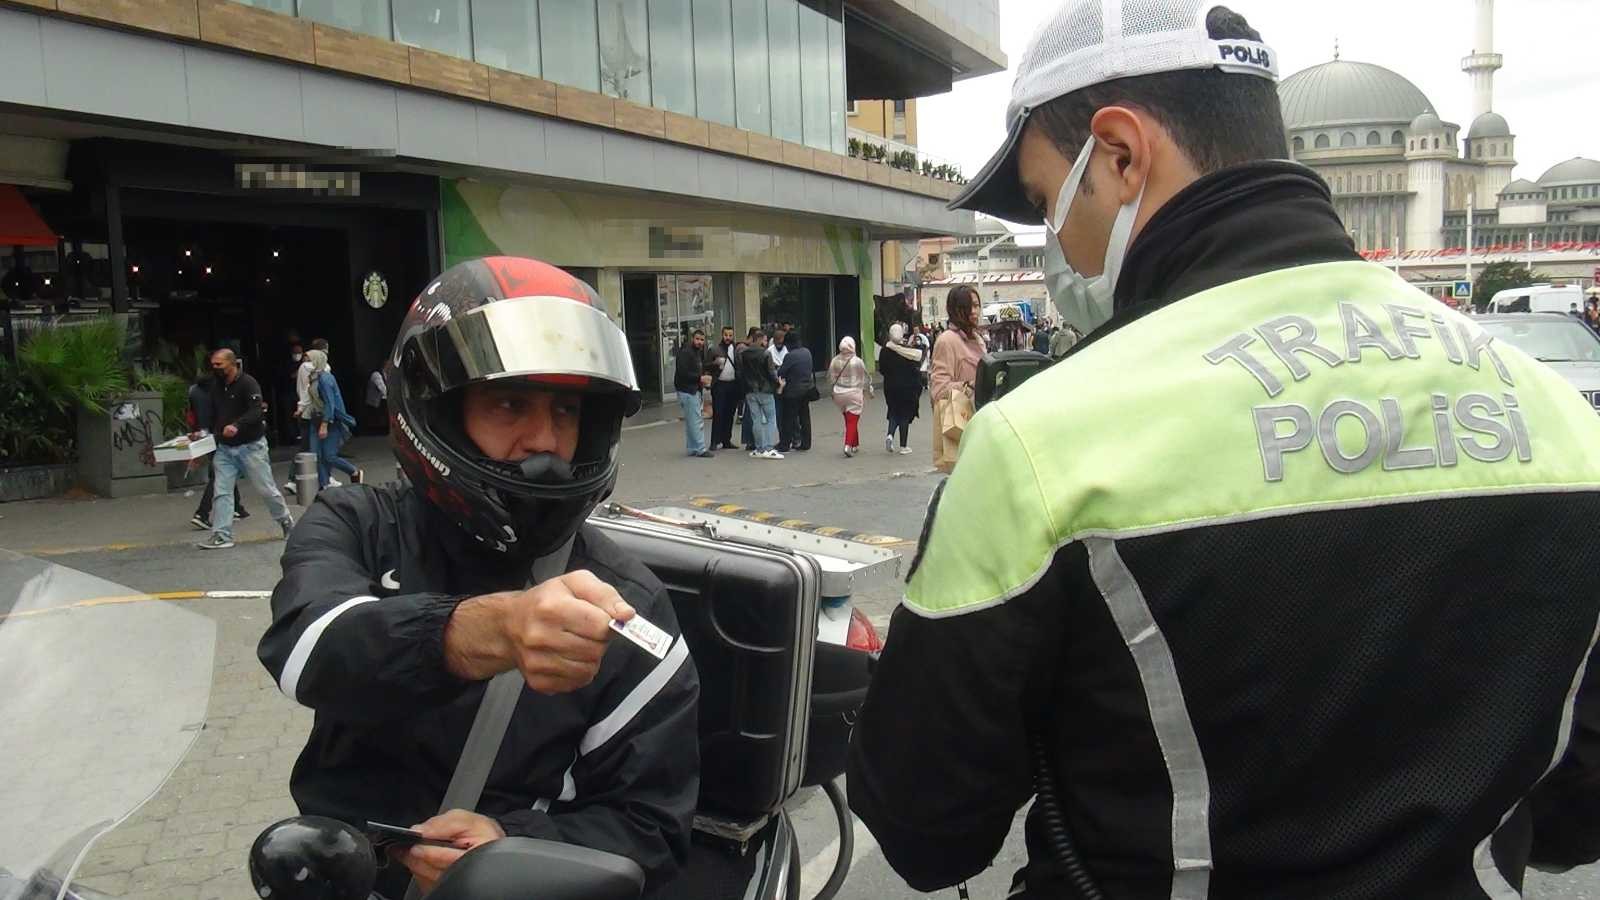 (Özel) Taksim’de trafik denetimi: Sürücülere ceza yağdı #istanbul